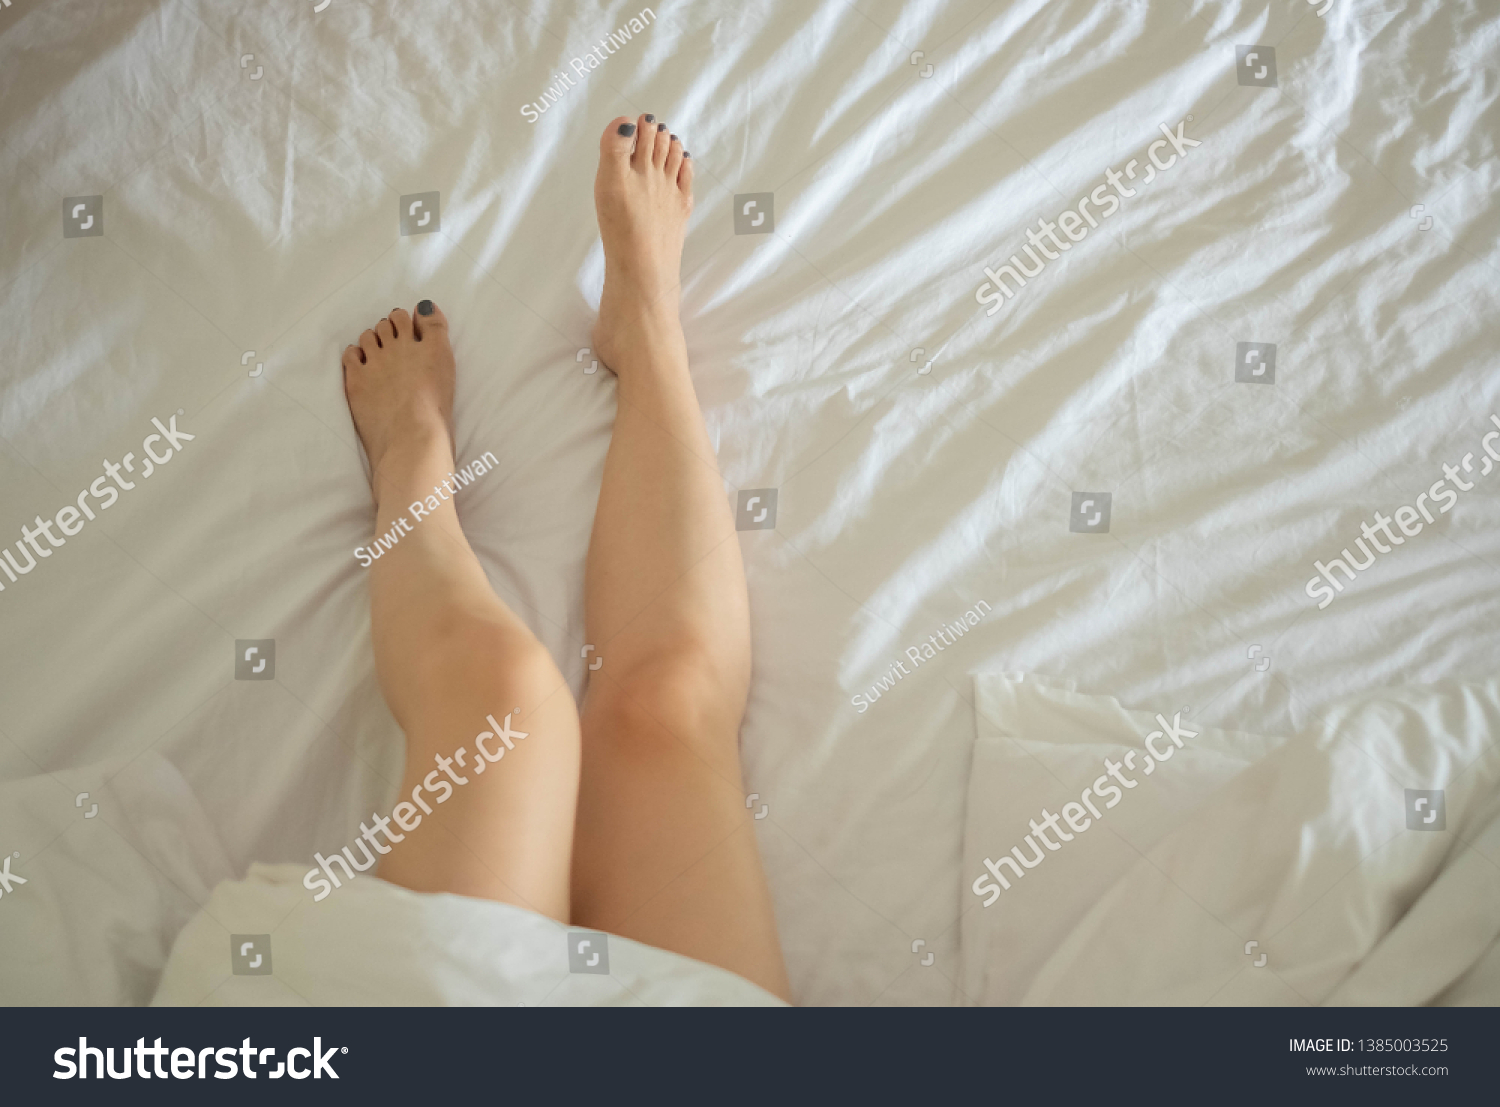 Lesbian feet sexy 